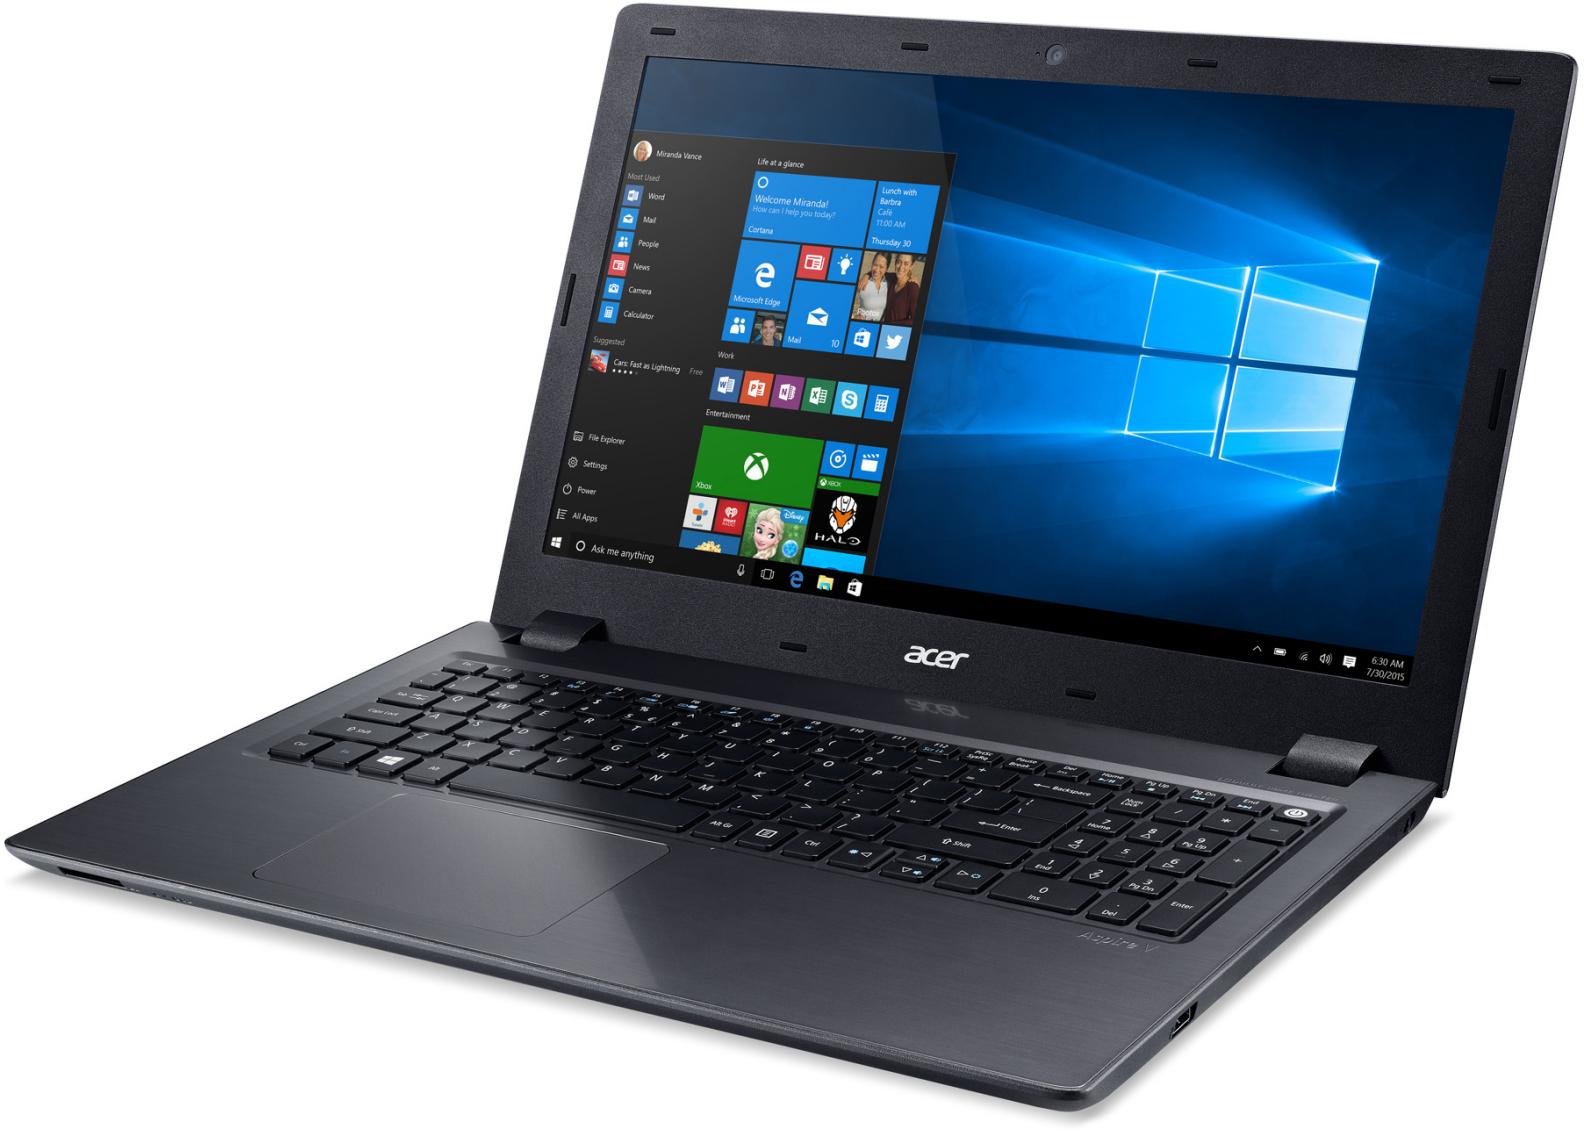  Acer Aspire V5-591G-59Y9